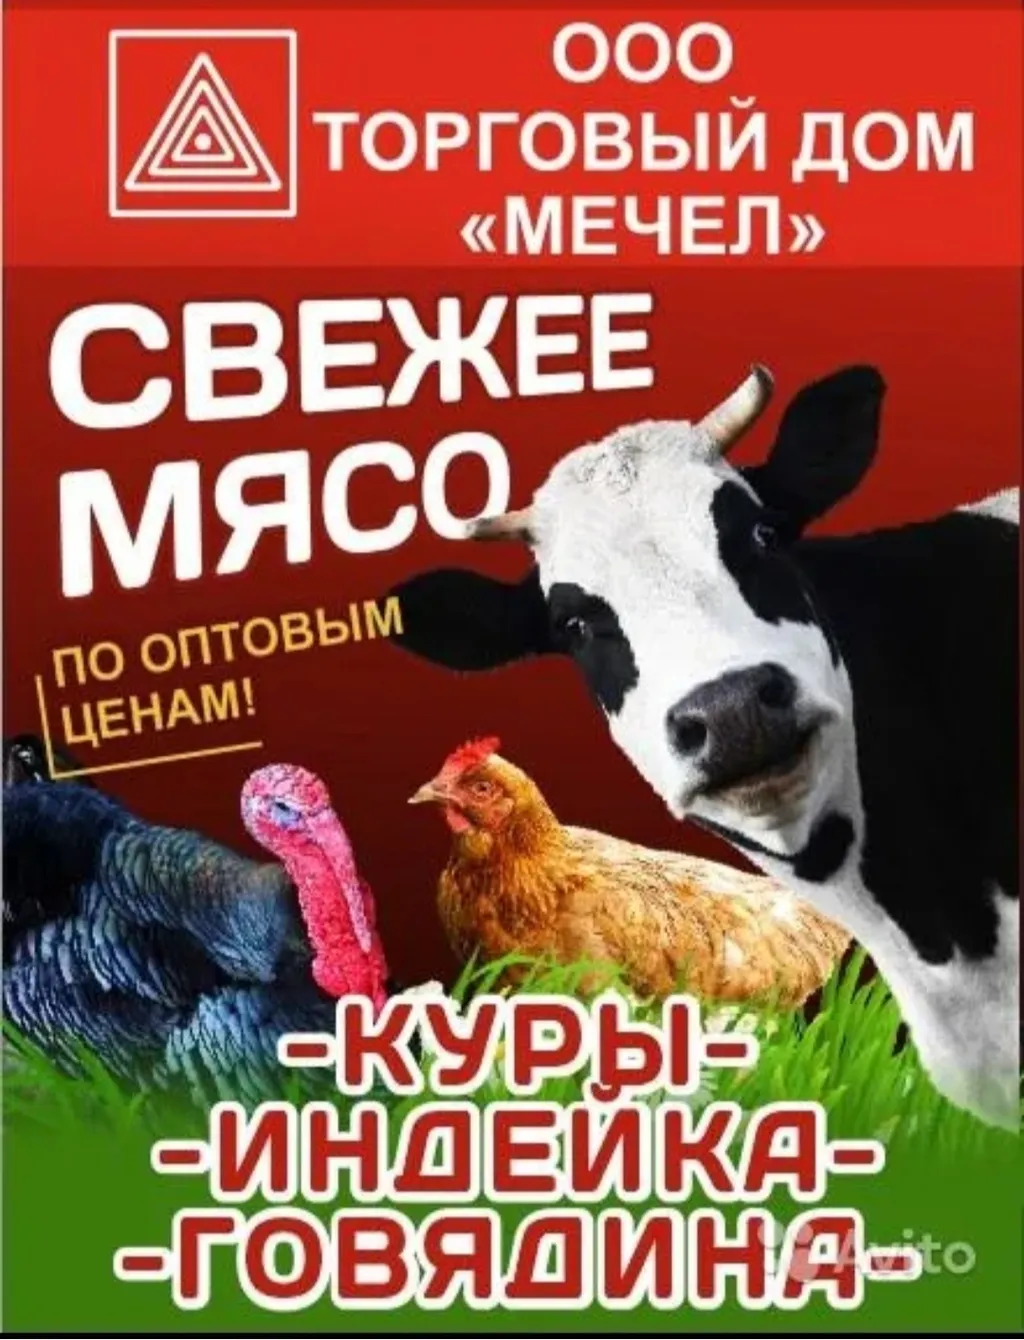 куриная продукция ХАЛЯЛЬ  в Йошкар-Оле и Республике Марий Эл 4